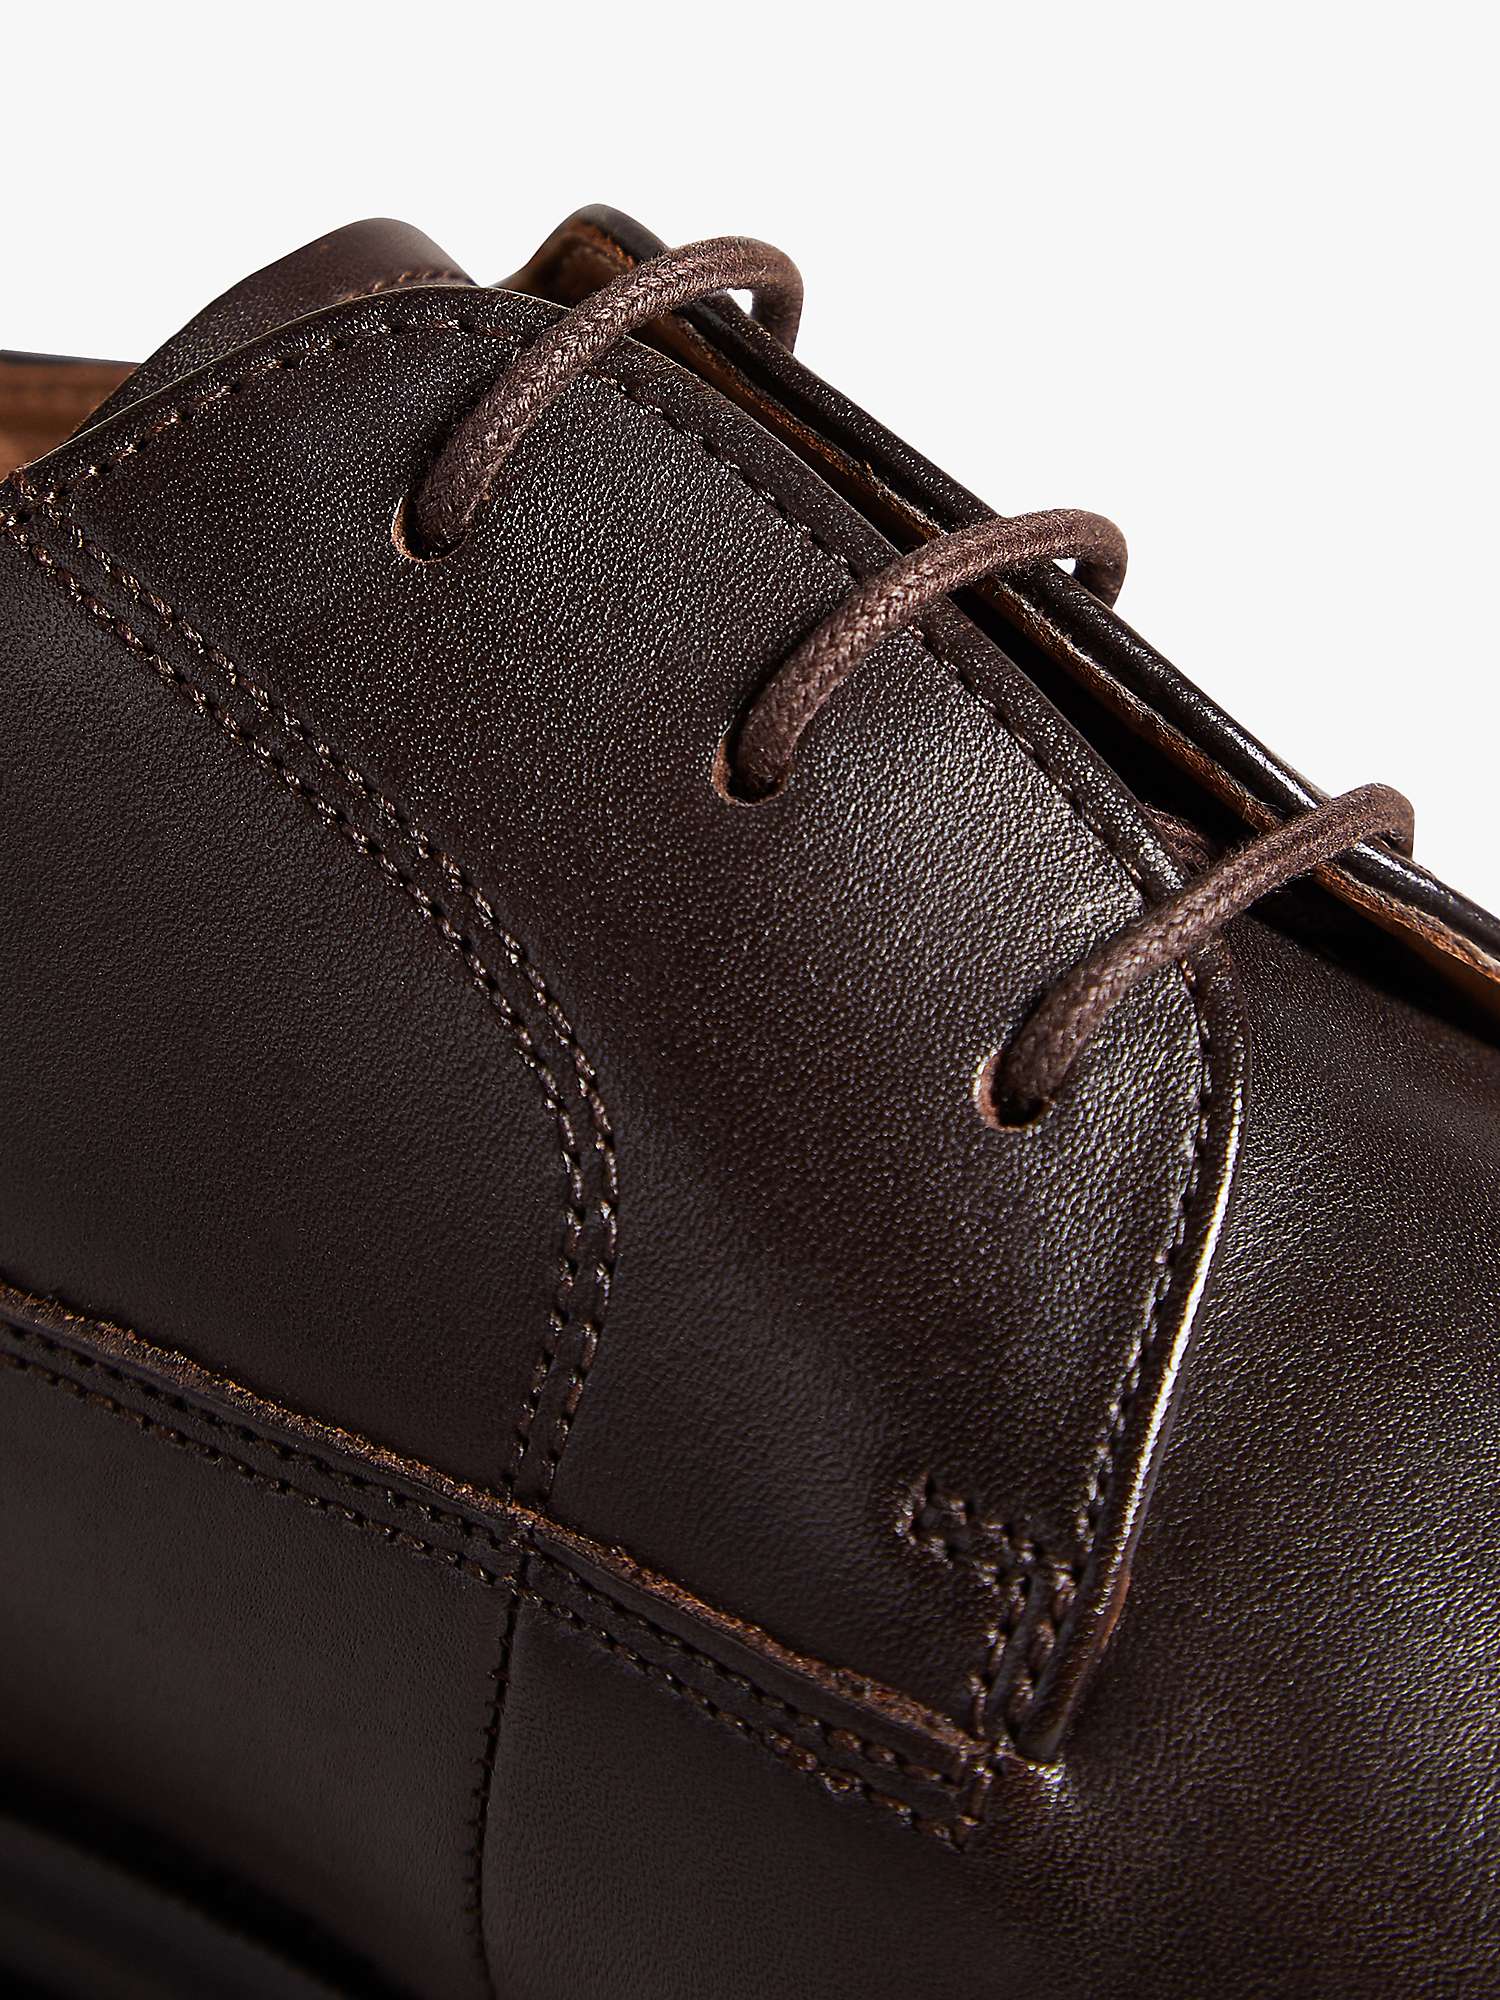 Buy Ted Baker Kampten Leather Derby Shoes, Brown Online at johnlewis.com